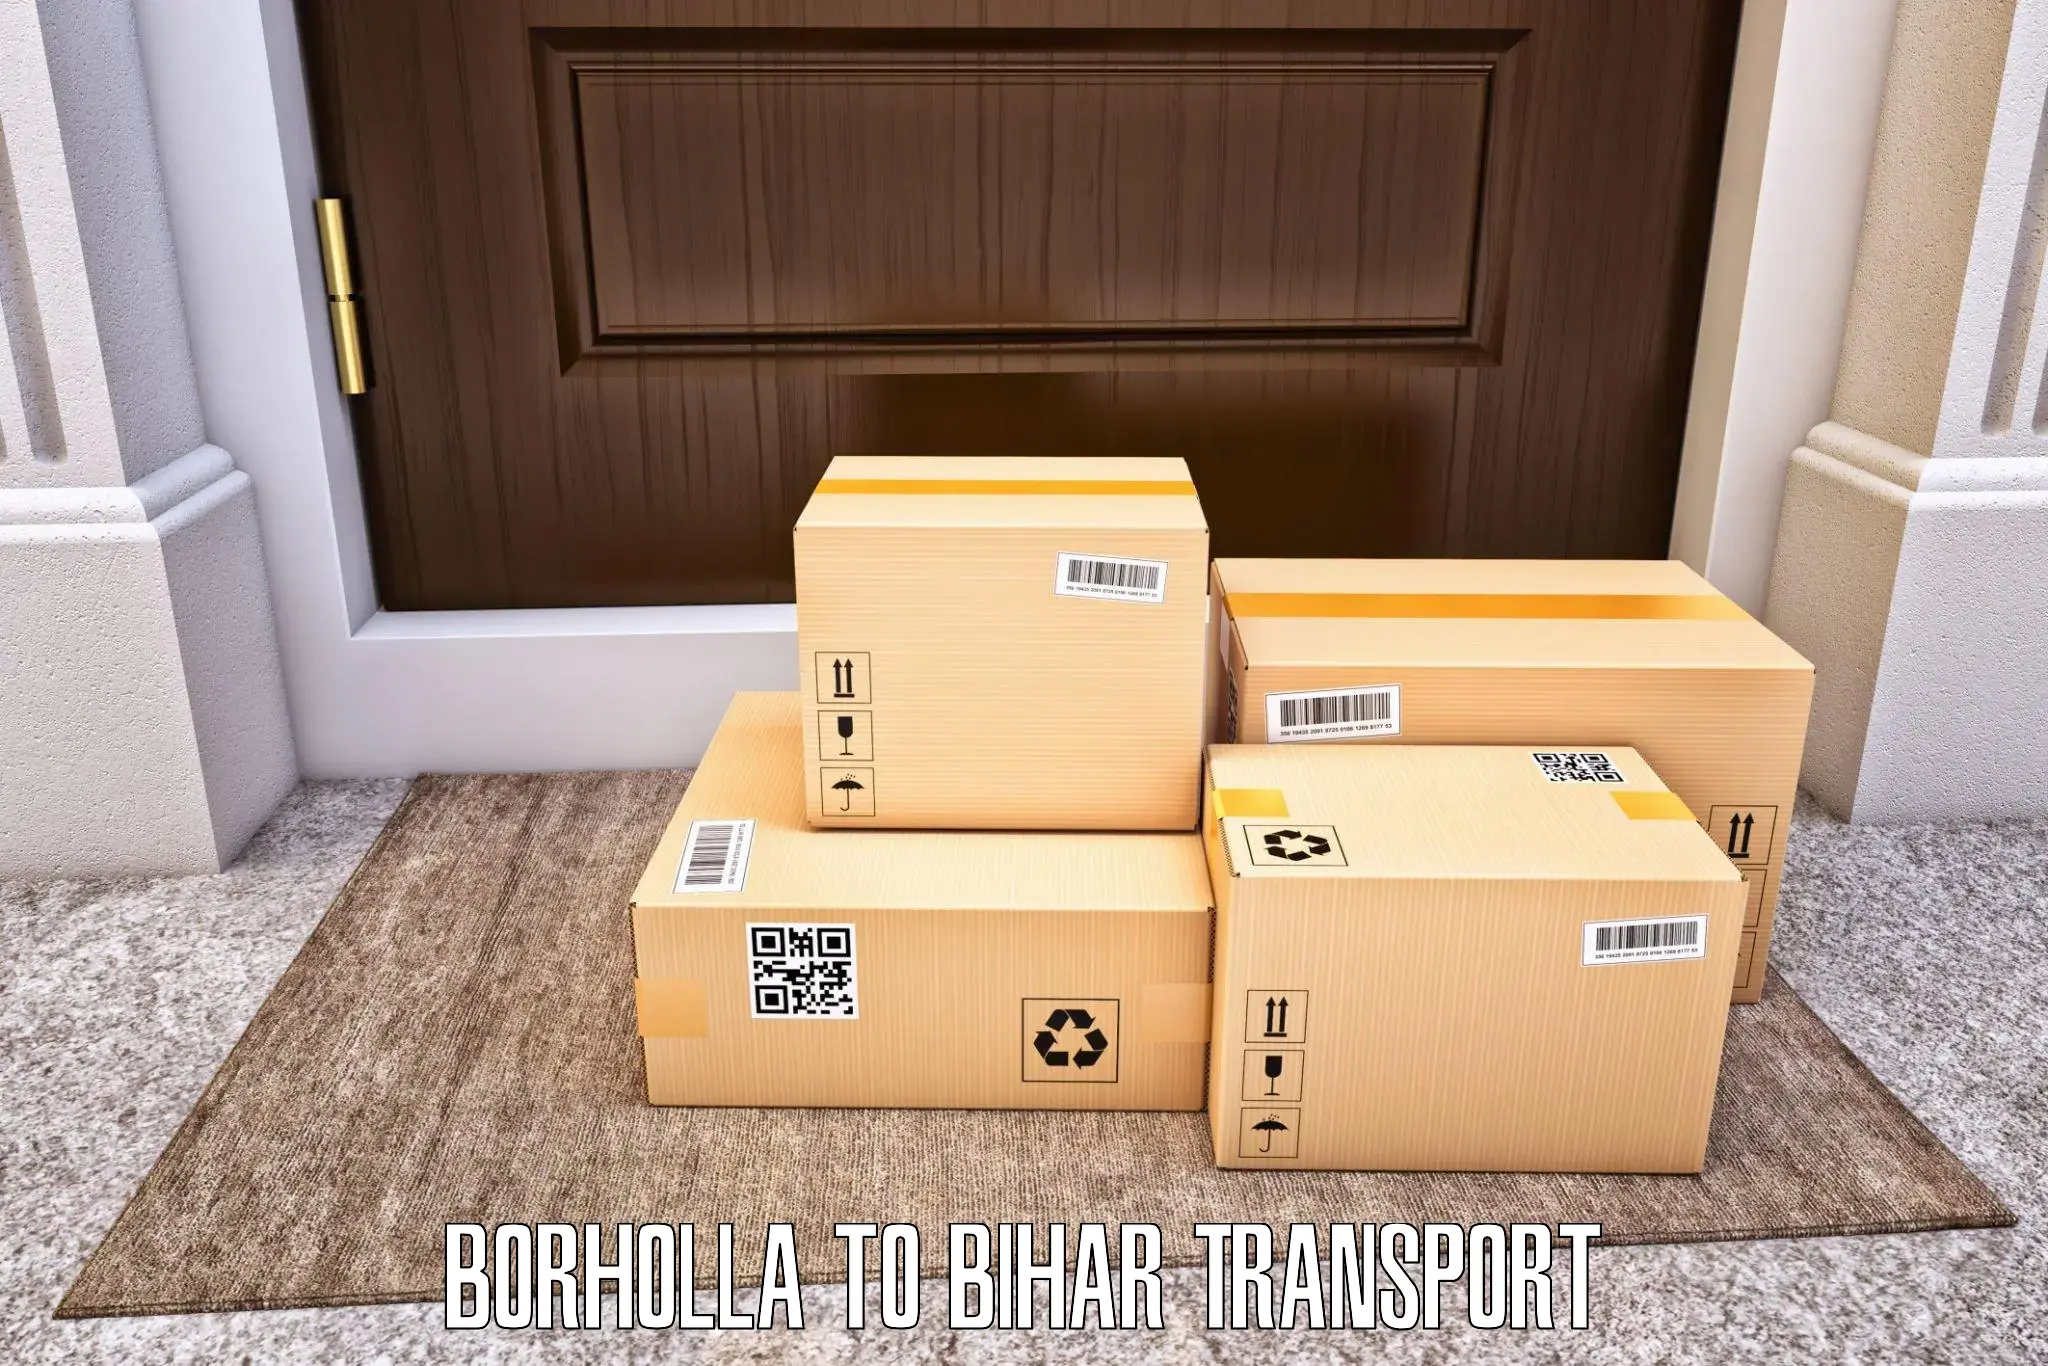 Air cargo transport services Borholla to Khodaganj